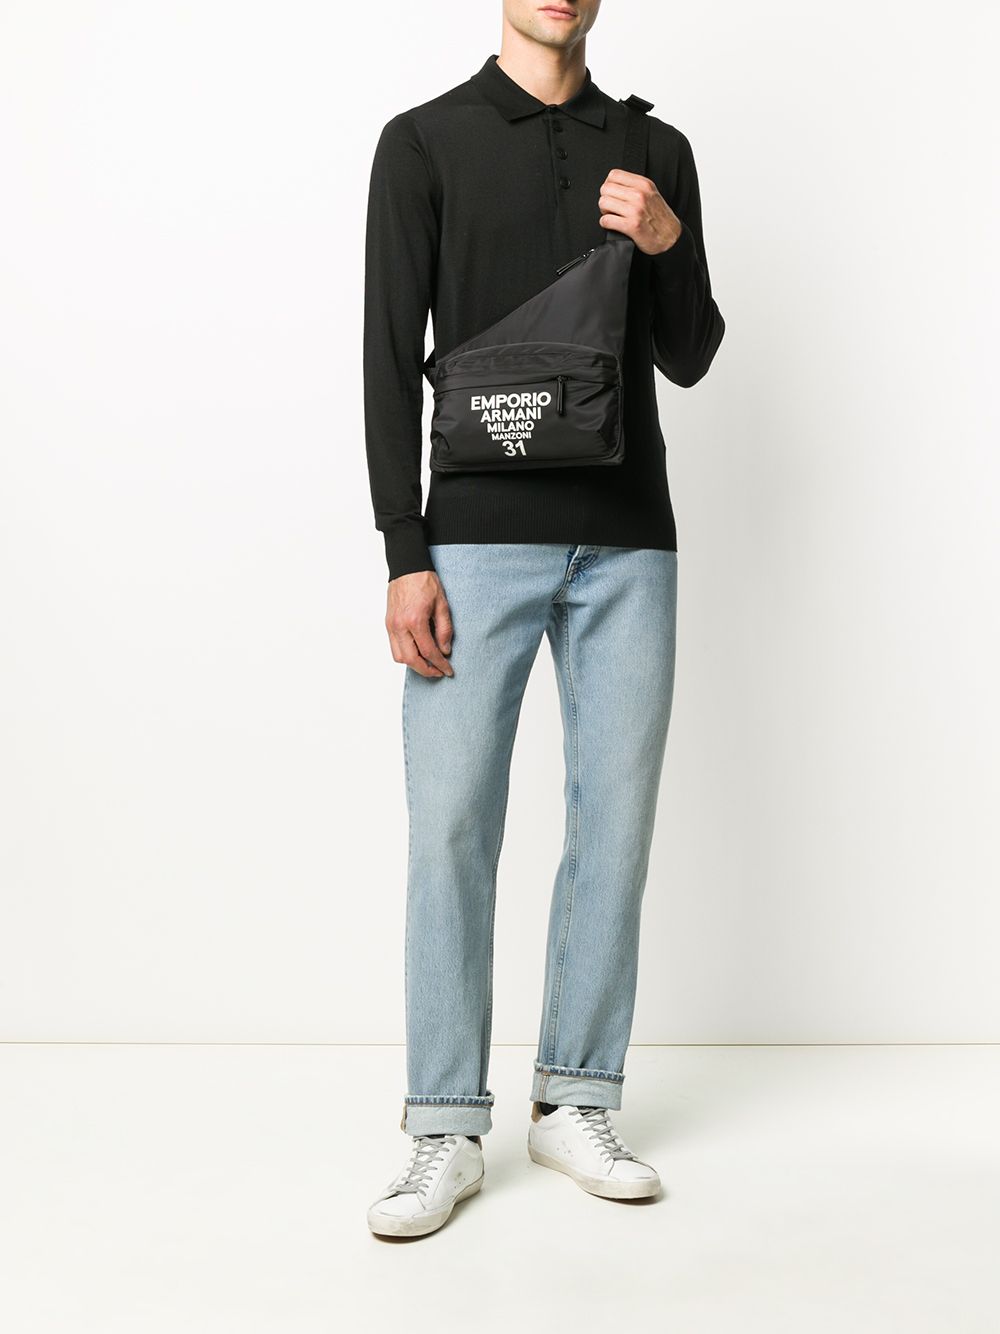 Emporio Armani Long Sleeve Polo Shirt - Farfetch